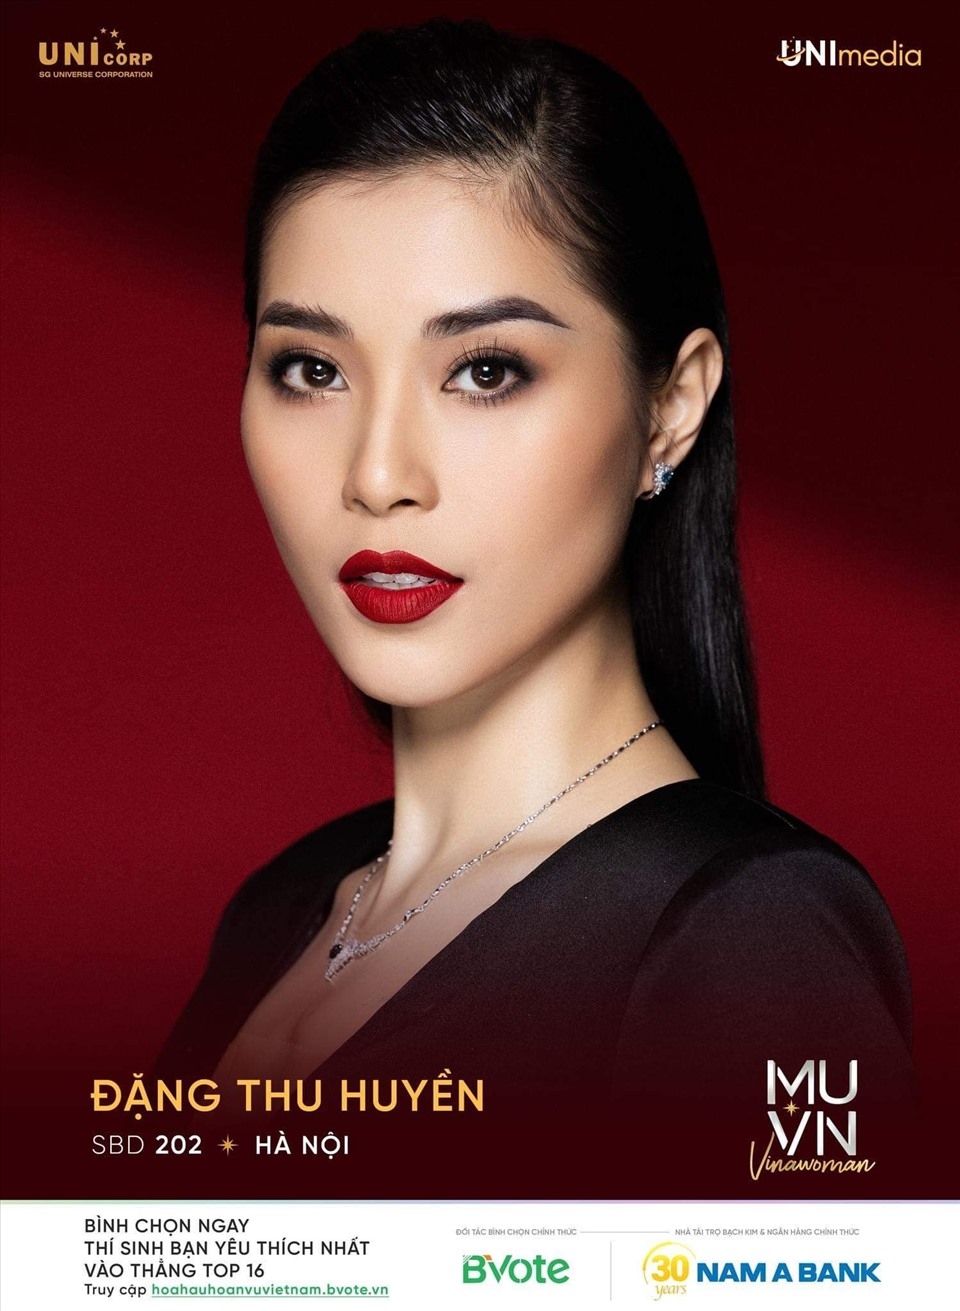 “Hoa khôi bóng chuyền” vào top 10 Hoa hậu Hoàn vũ Việt Nam 2022